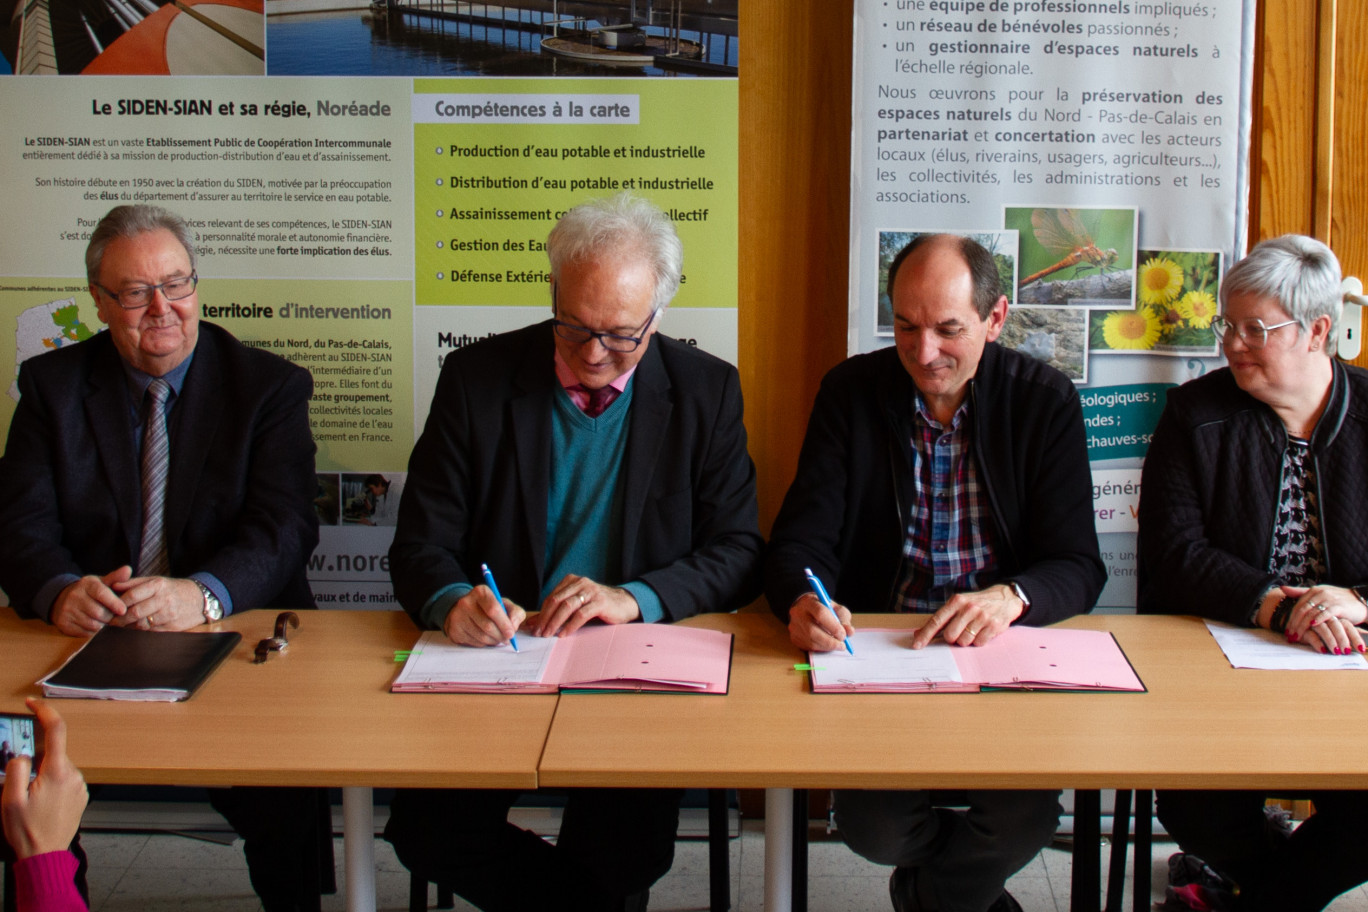 Le SIDEN-SIAN et Noréade nouent un partenariat avec le Conservatoire d'espaces naturels du Nord et du Pas-de-Calais